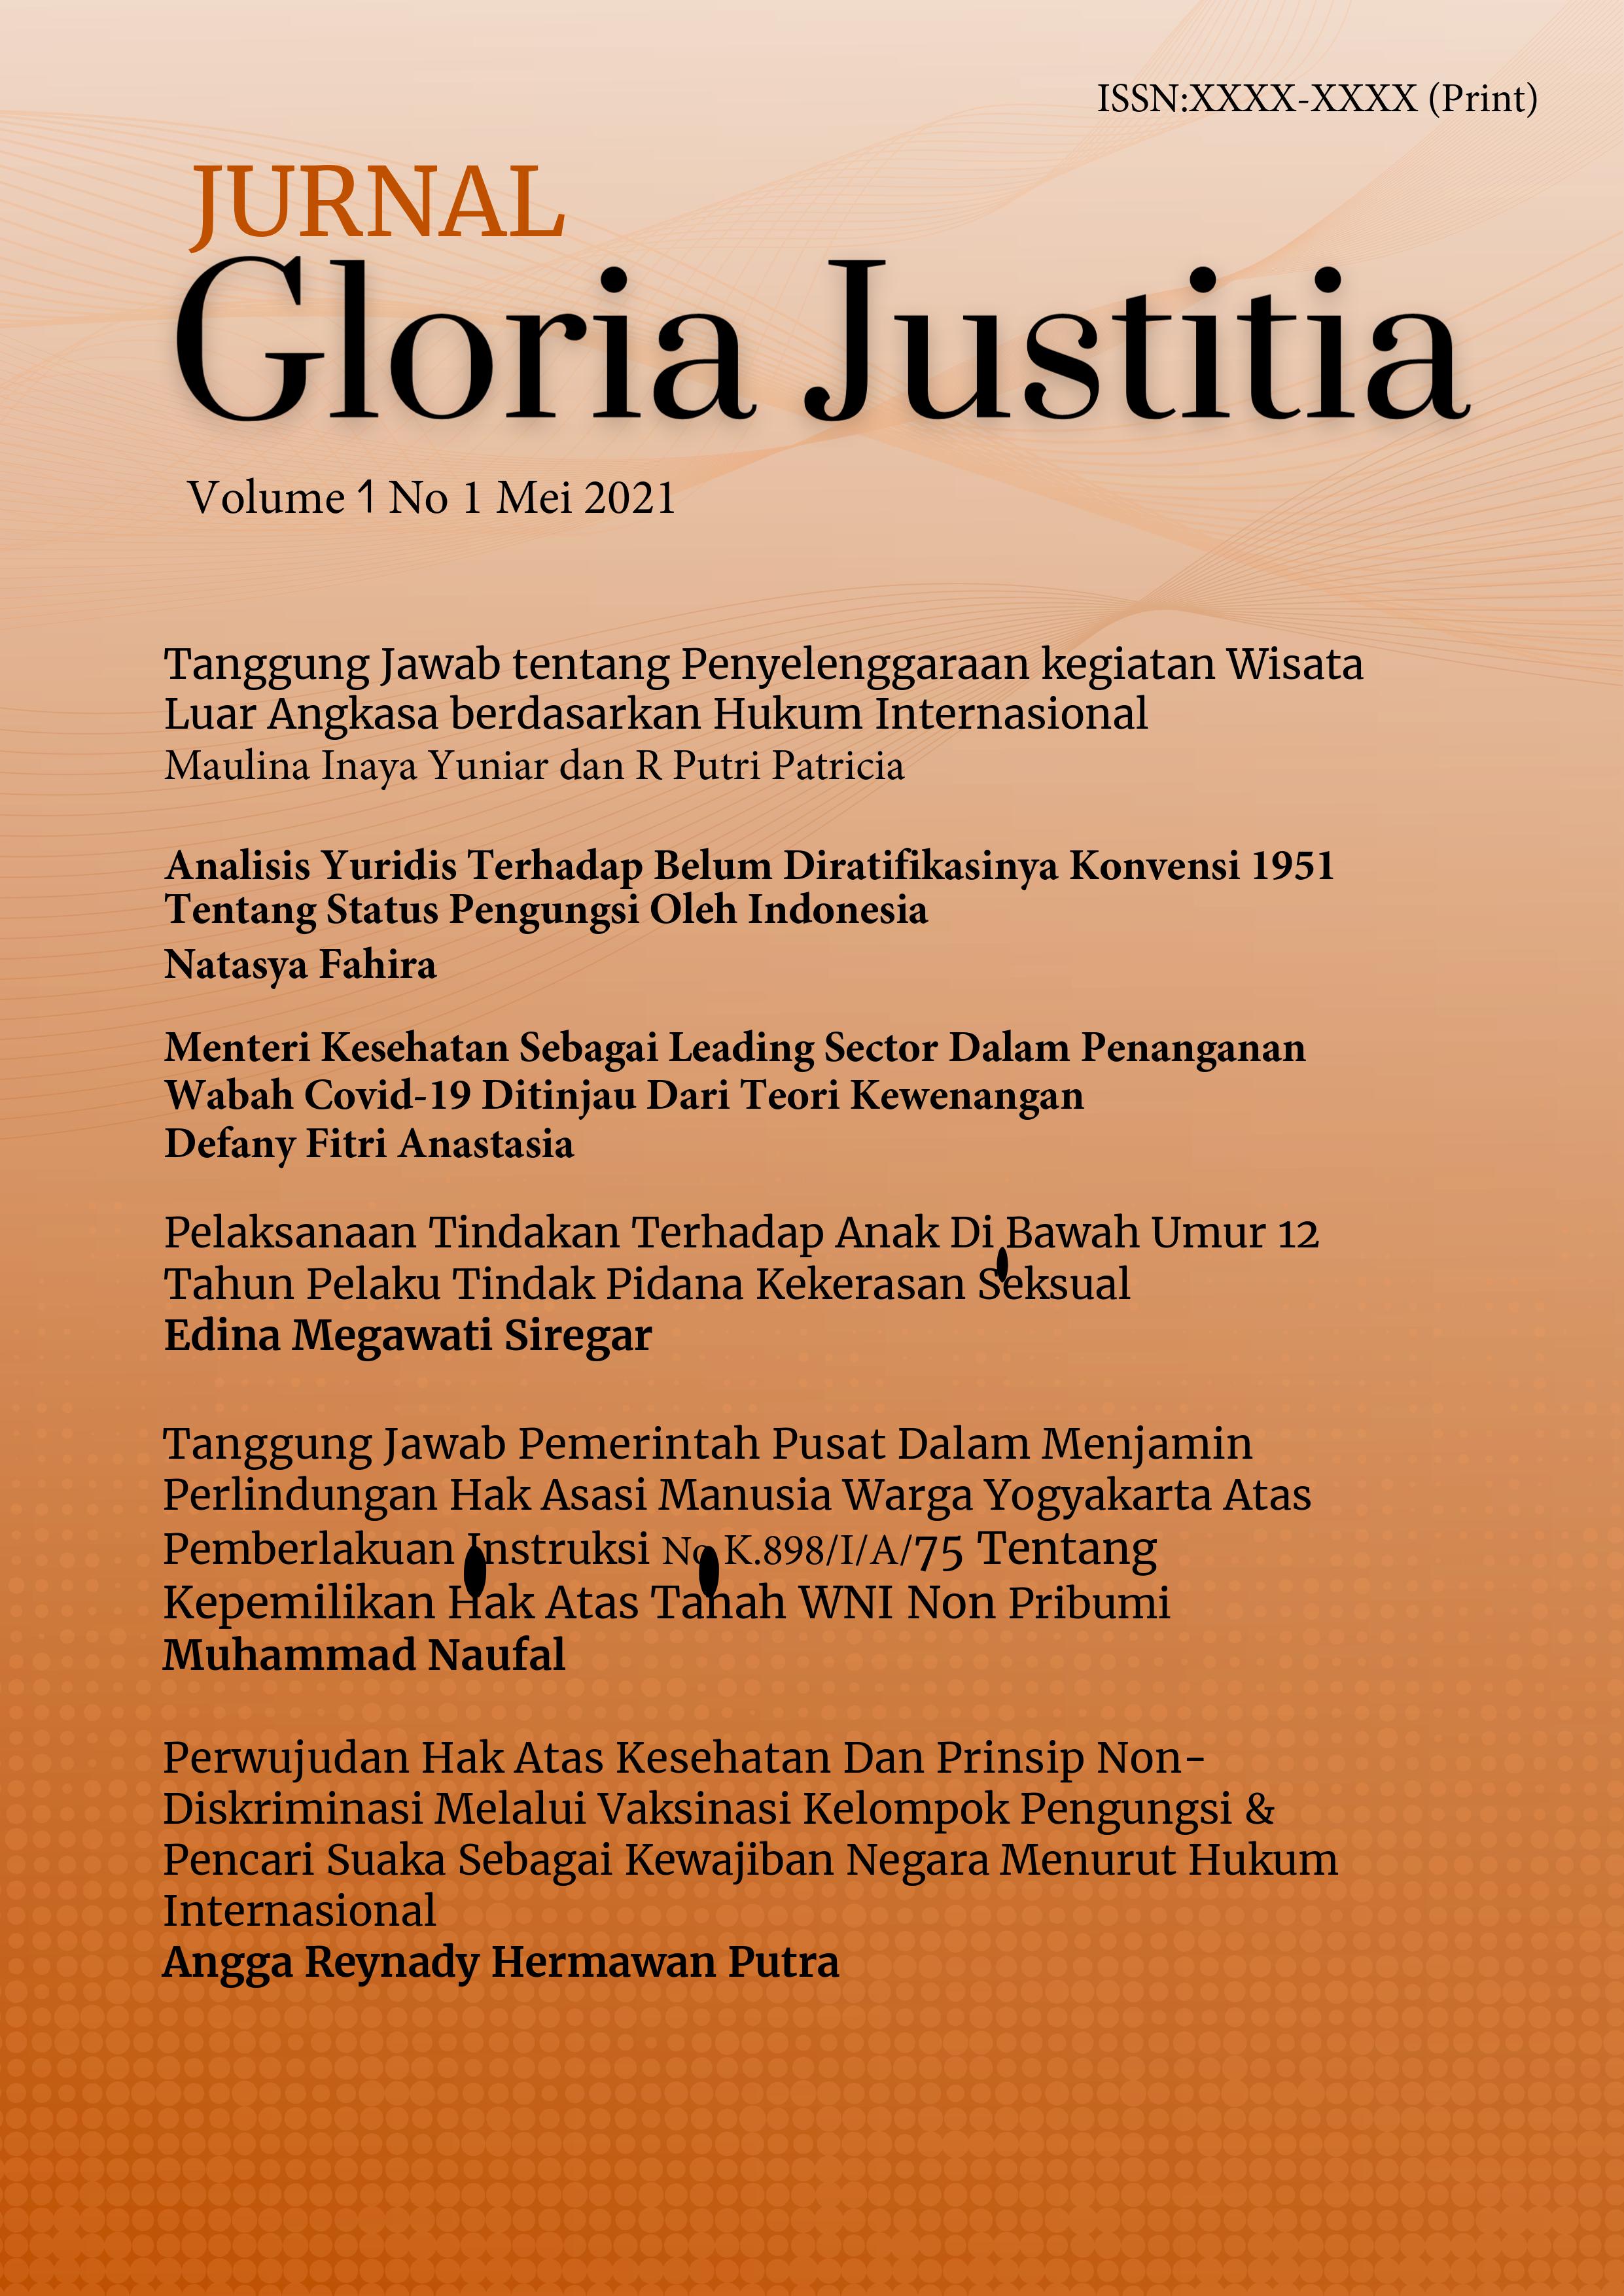 Gloria Justitia